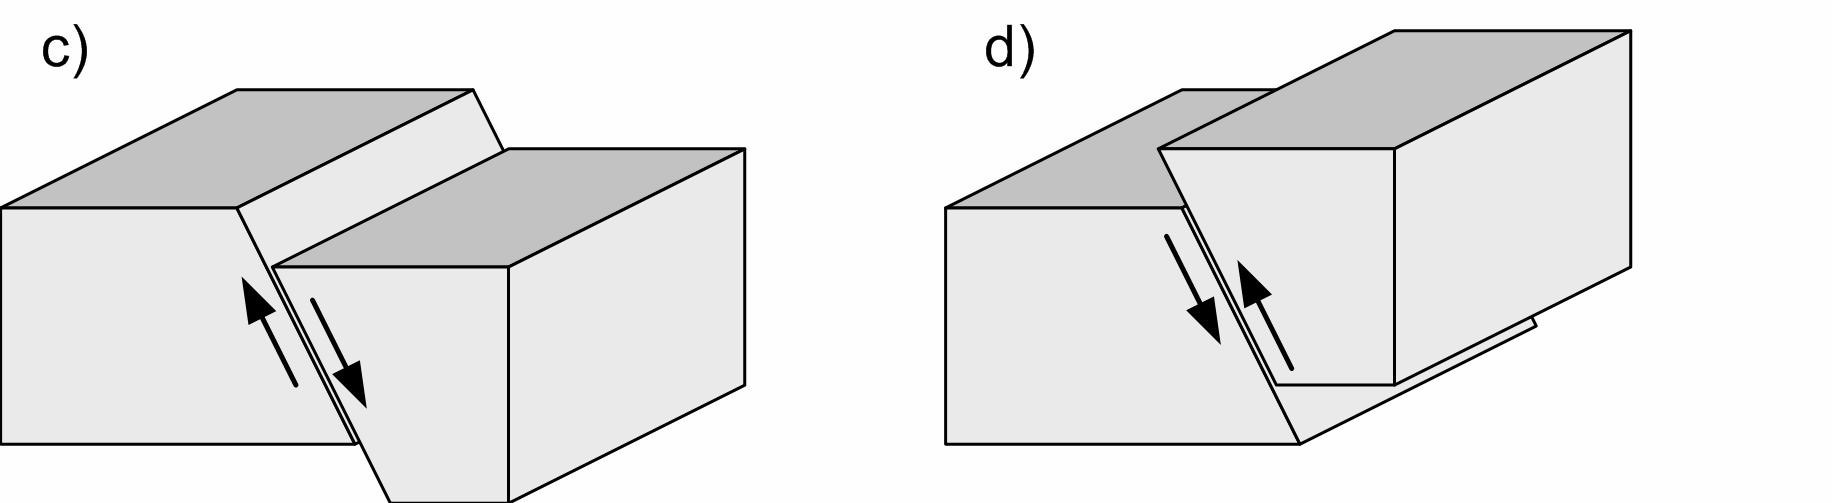 Rozdział 1 Wprowadzenie Rys. 1-2 Typowe układy poślizgów mas skalnych w uskoku tektonicznym (opis w tekście).